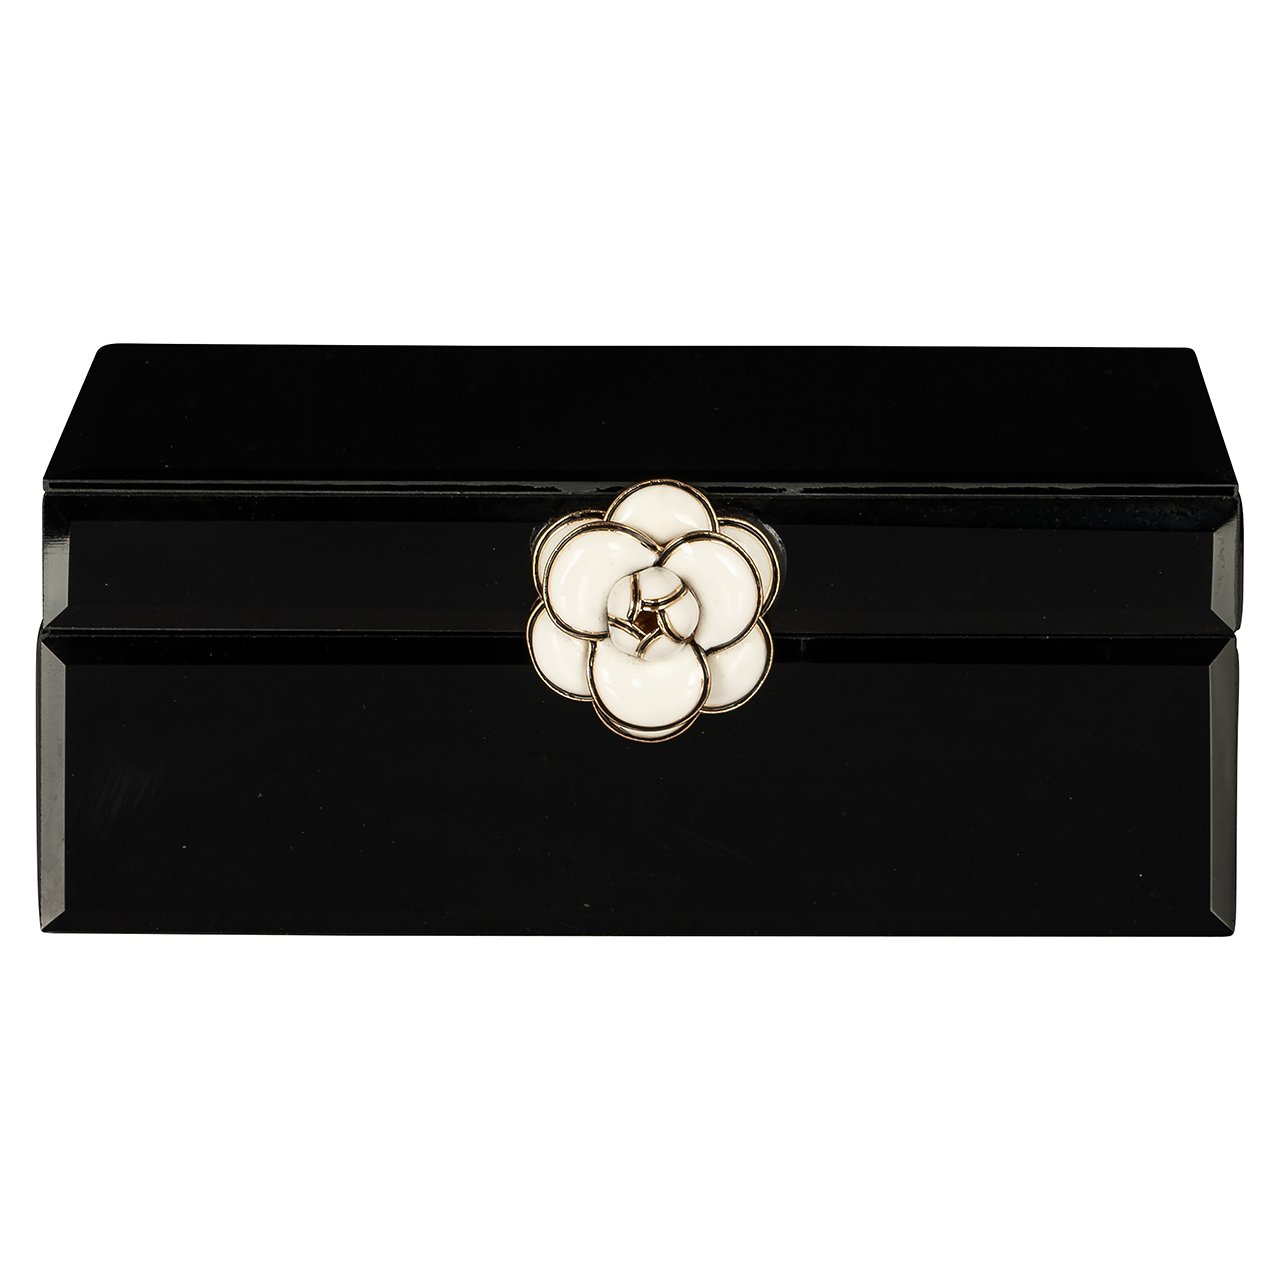 Juwelenbox Vivy klein (Black)